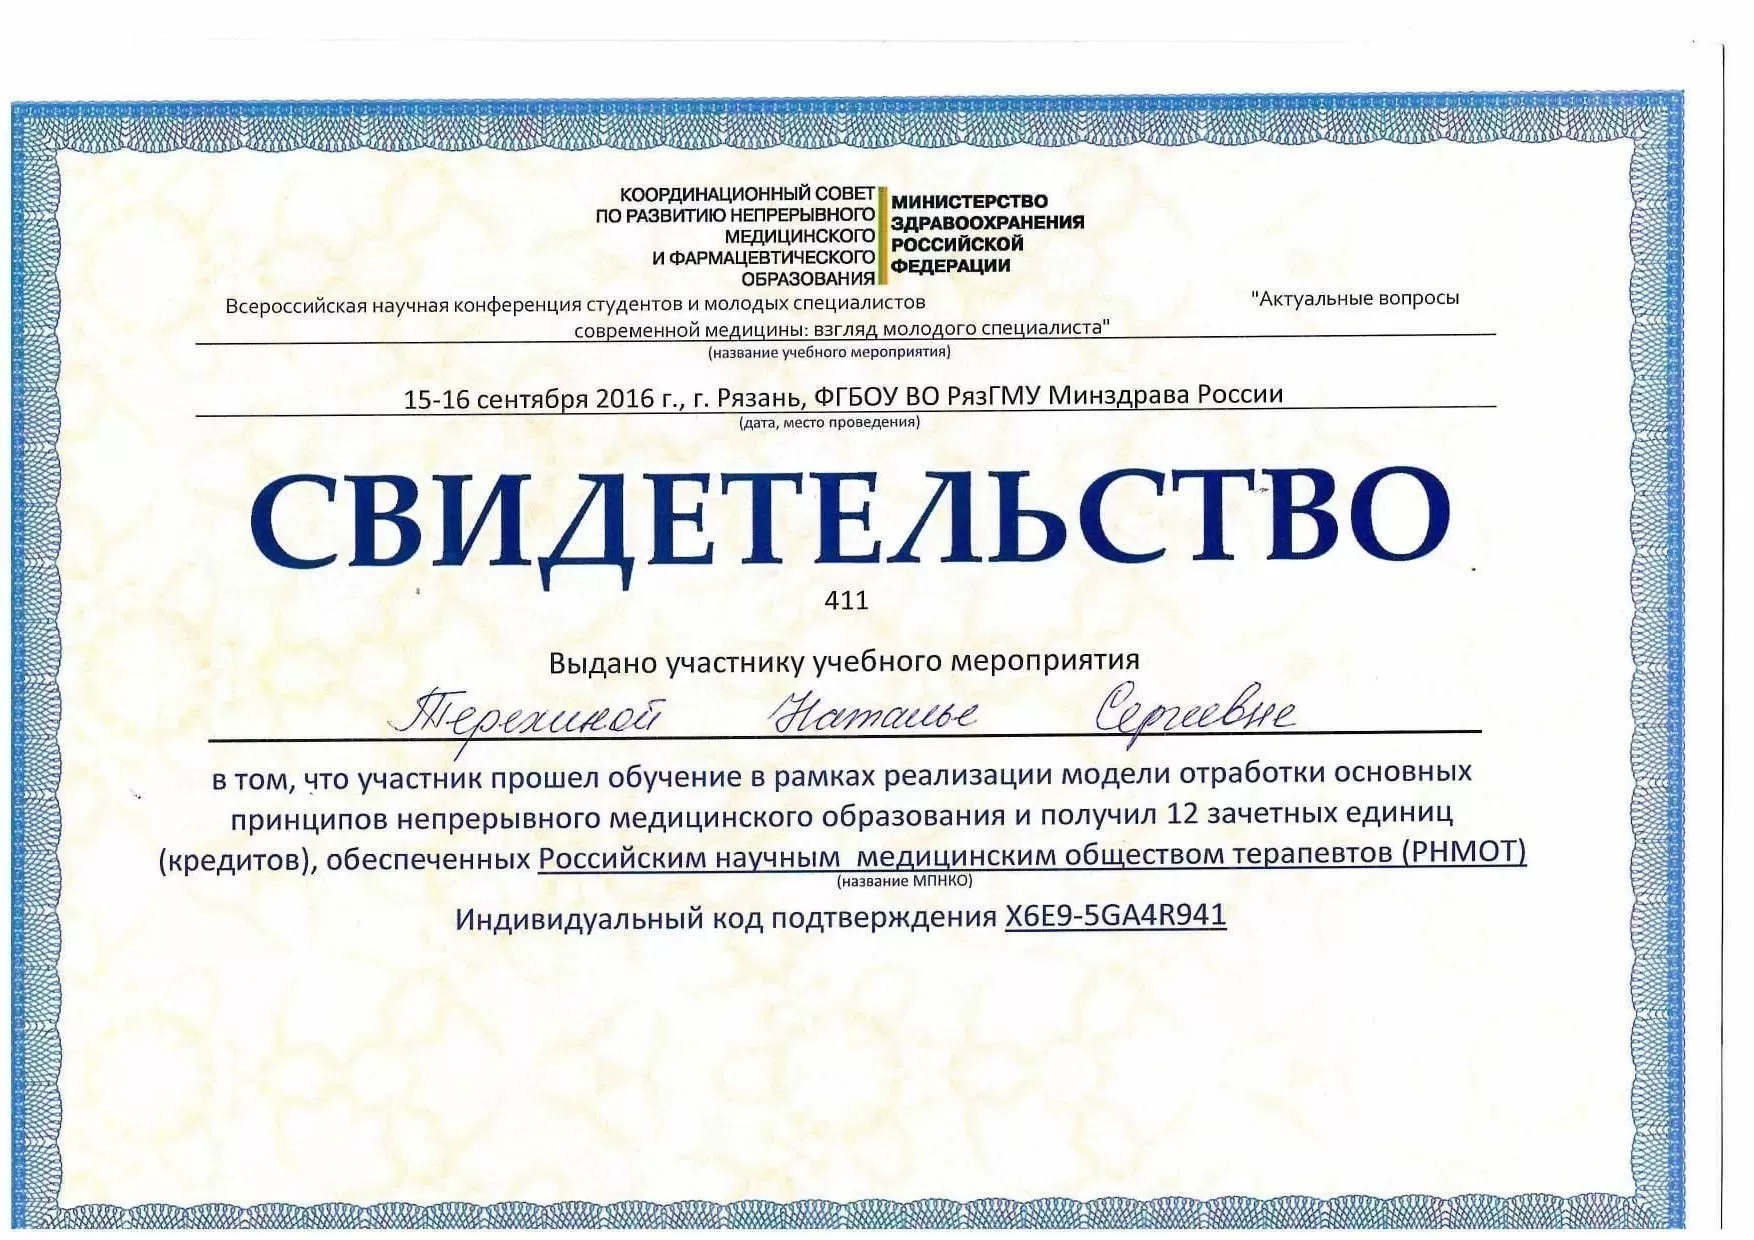 Сертификацы и лицензии Терехина (Харламова) Наталья Сергеевна